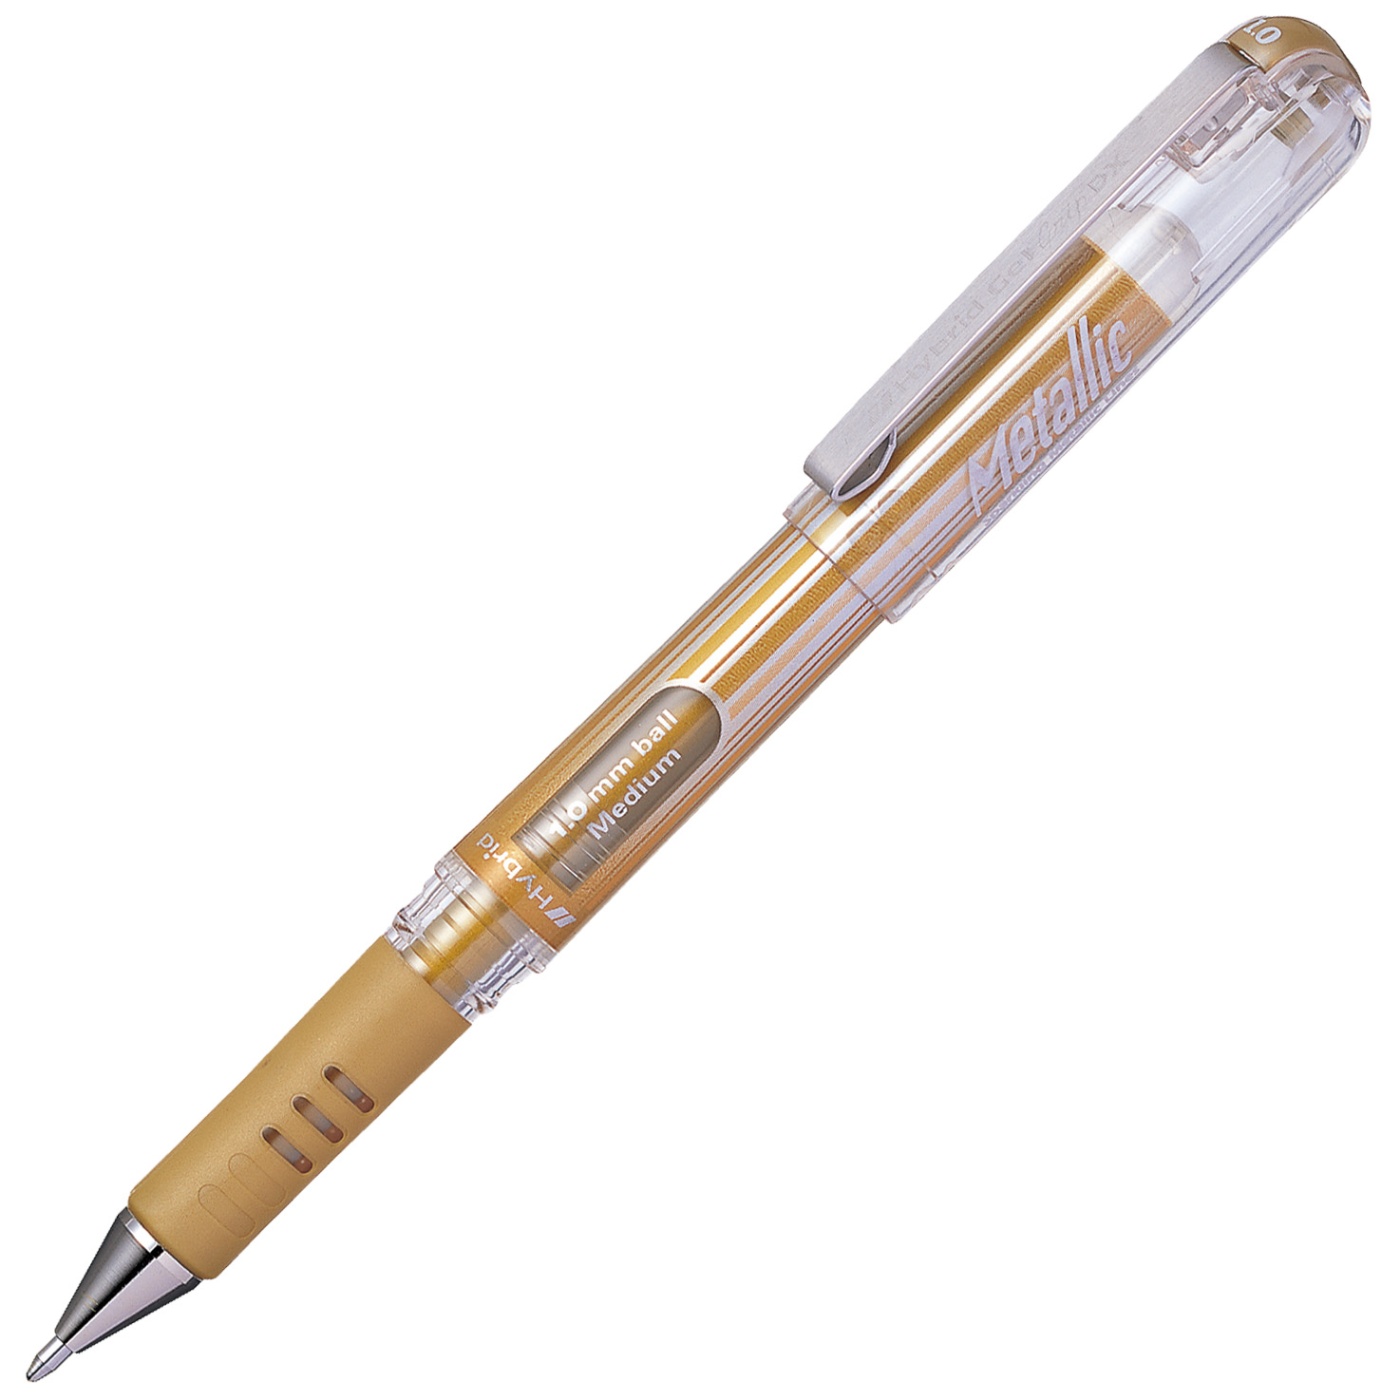 Hybrid Gel Grip DX Metallic in the group Pens / Writing / Gel Pens at Pen Store (104644_r)